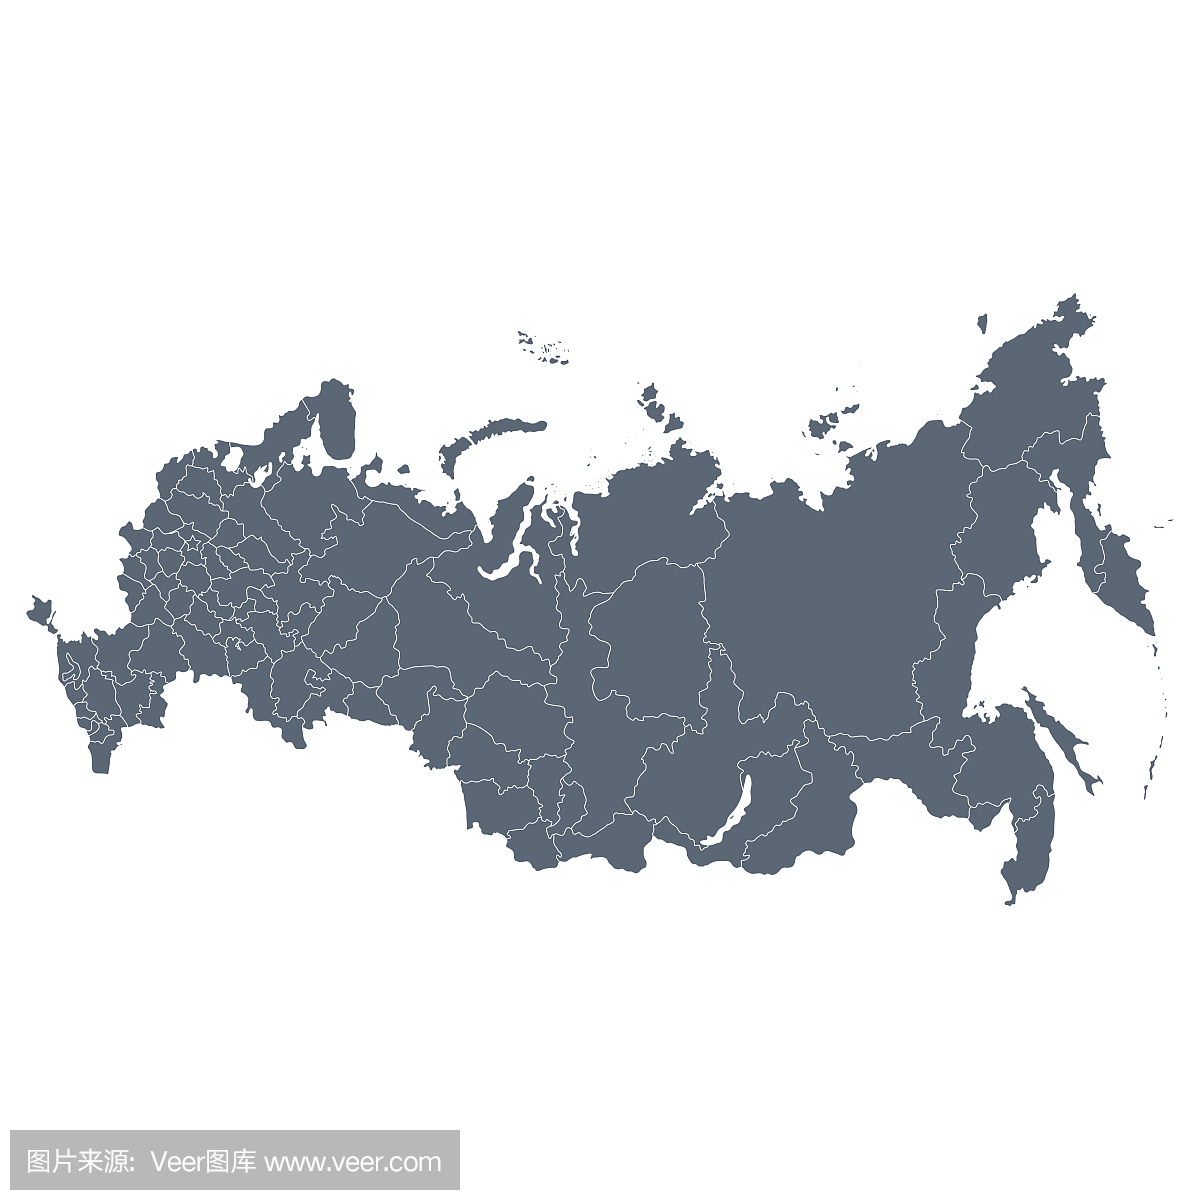 俄罗斯地形图_万图壁纸网